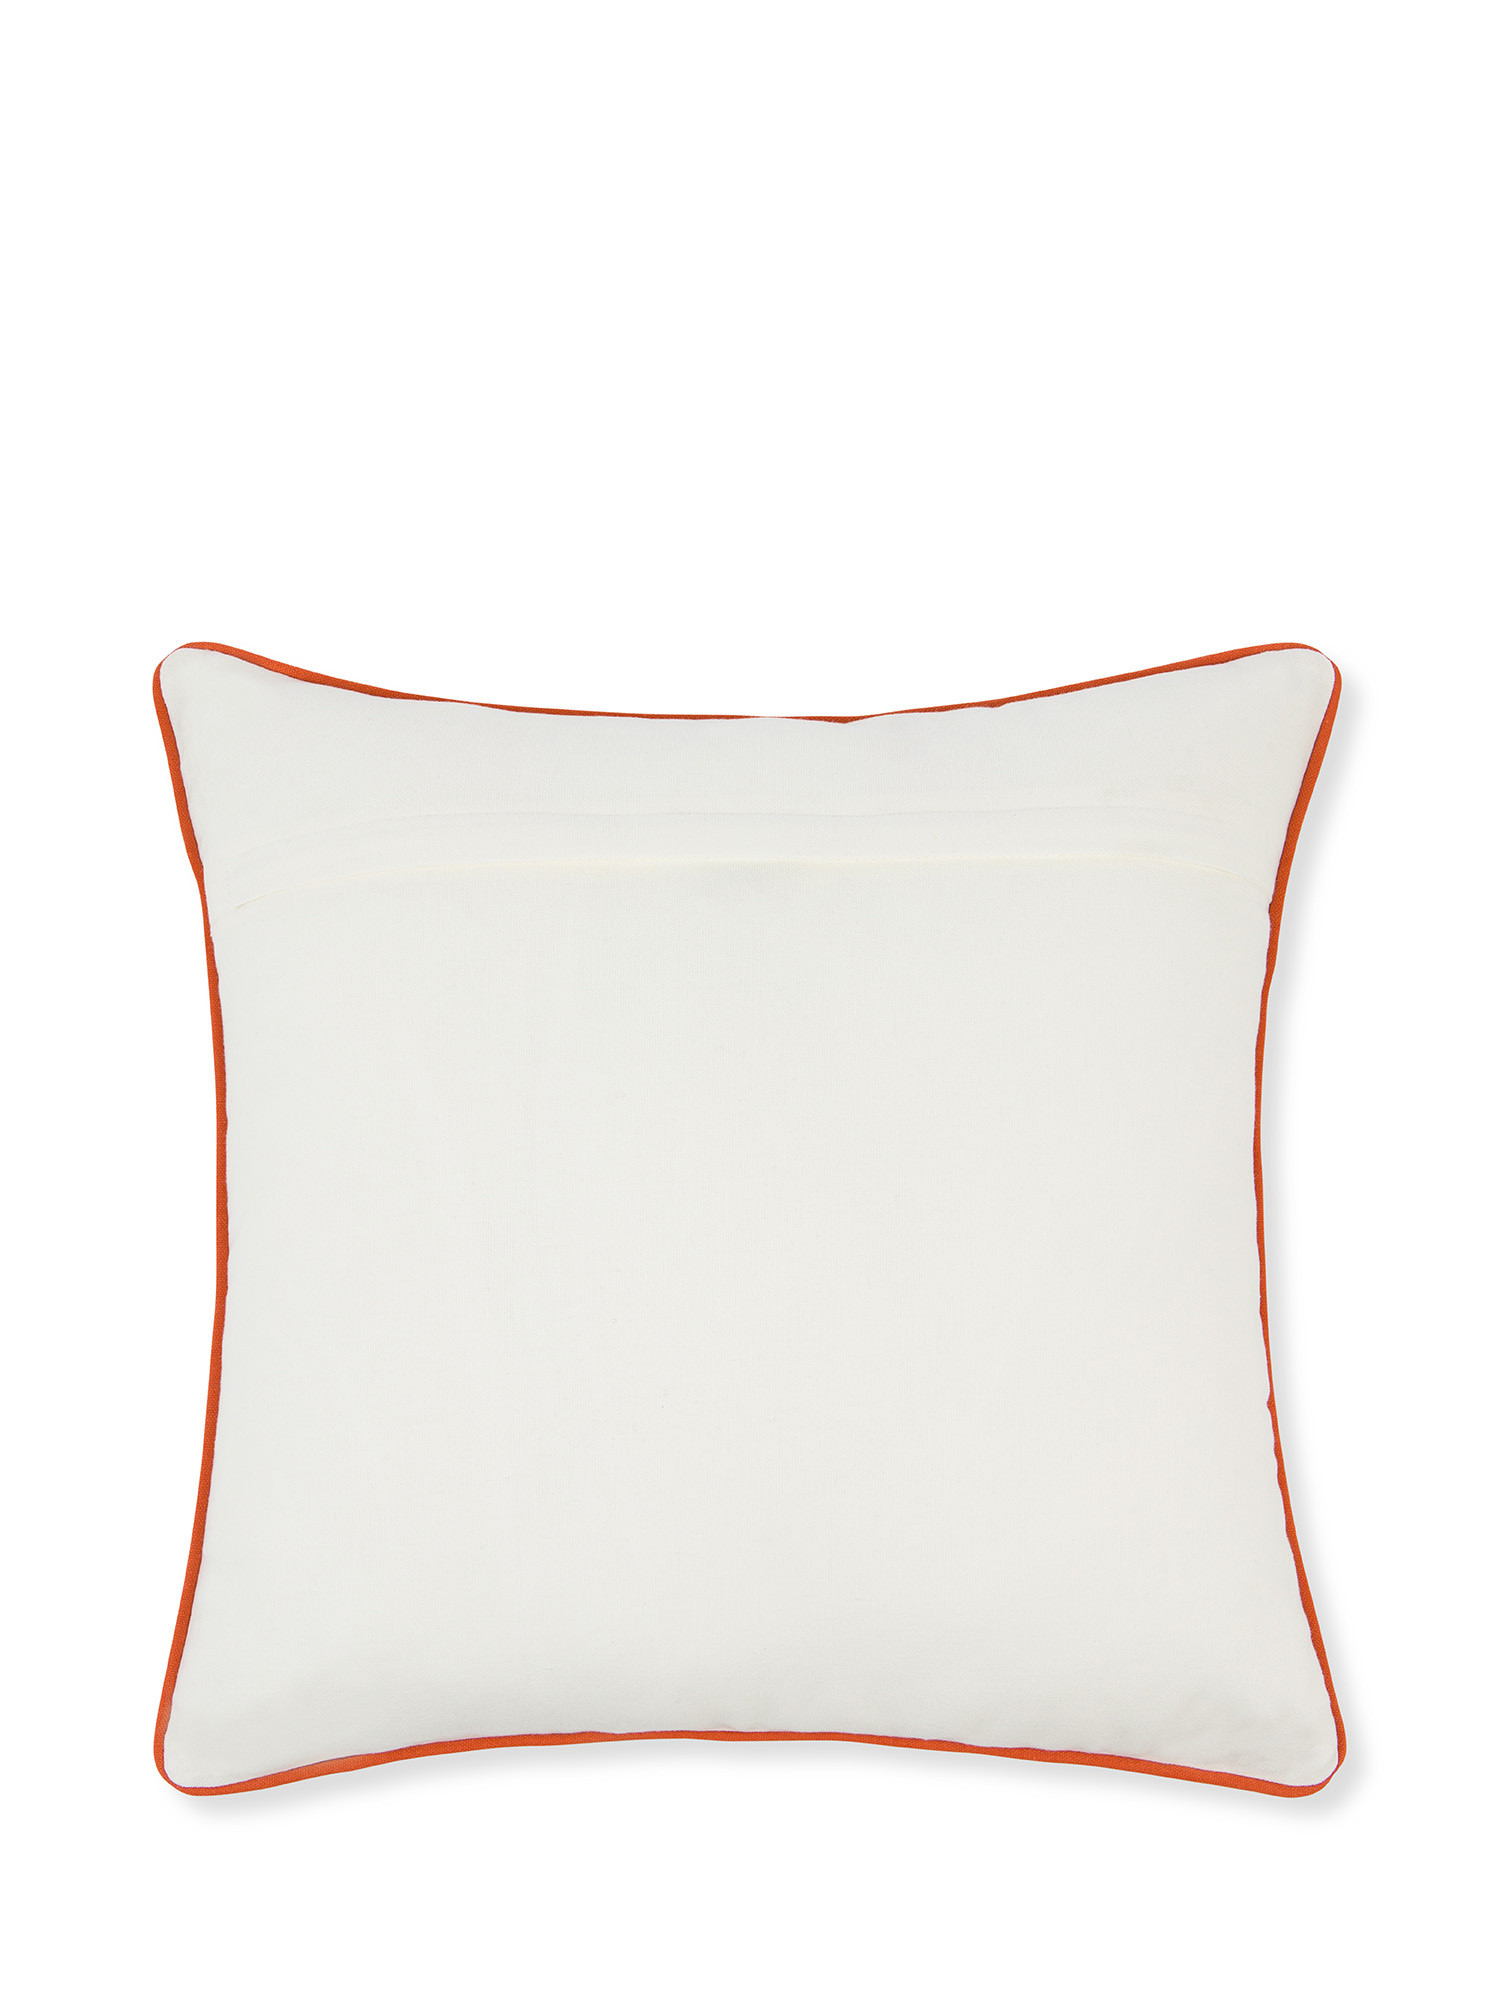 Cuscino ricamato con motivo geometrico e applicazioni 45x45cm, Arancione, large image number 1